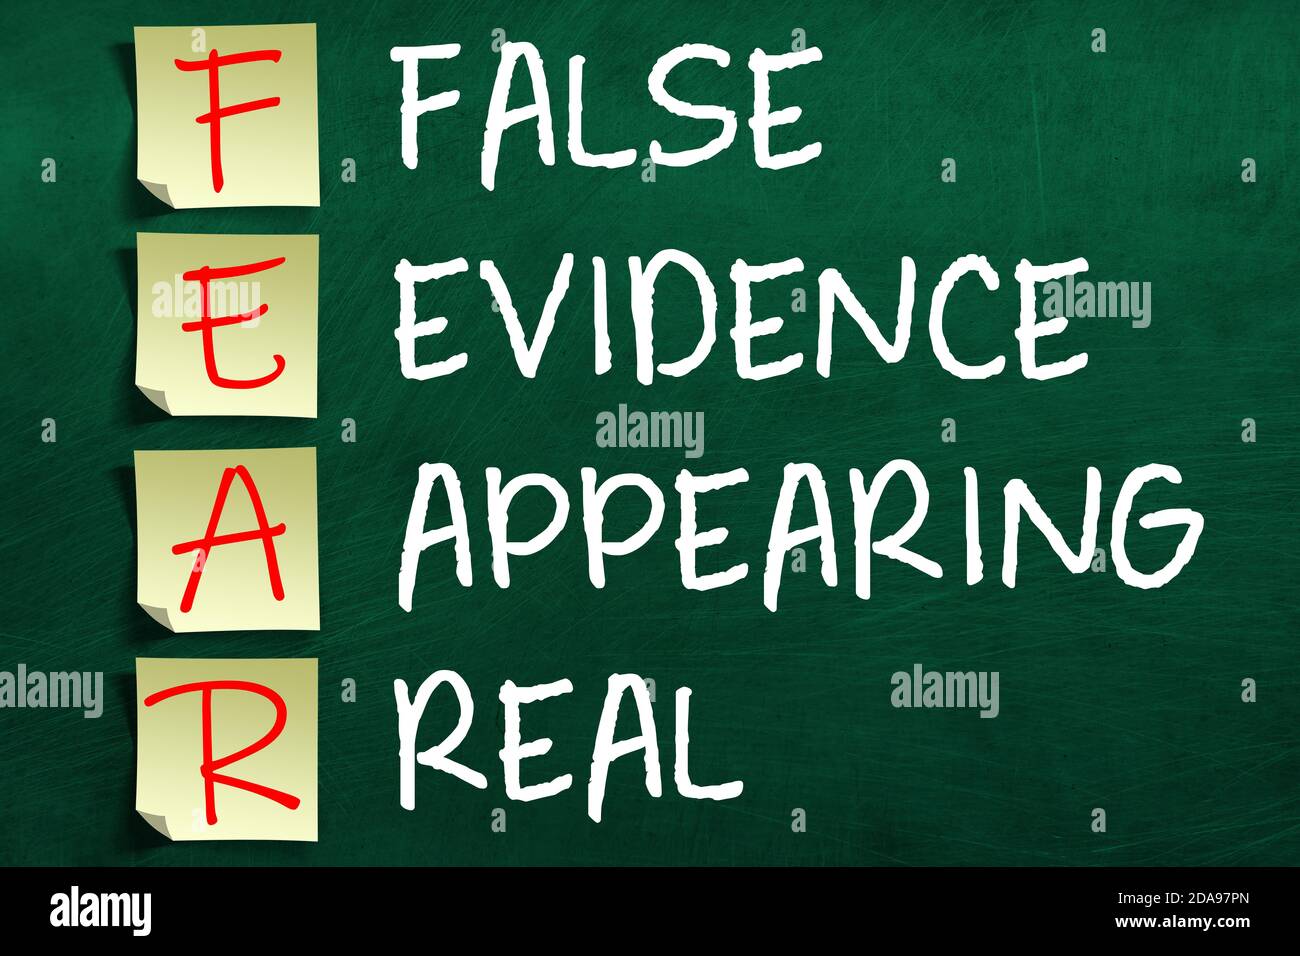 Rendu 3D de l'acronyme peur motivant et inspirant sur les notes adhésives publiées sur le tableau de surveillance, ce qui signifie que les fausses preuves apparaissent réelles. Banque D'Images